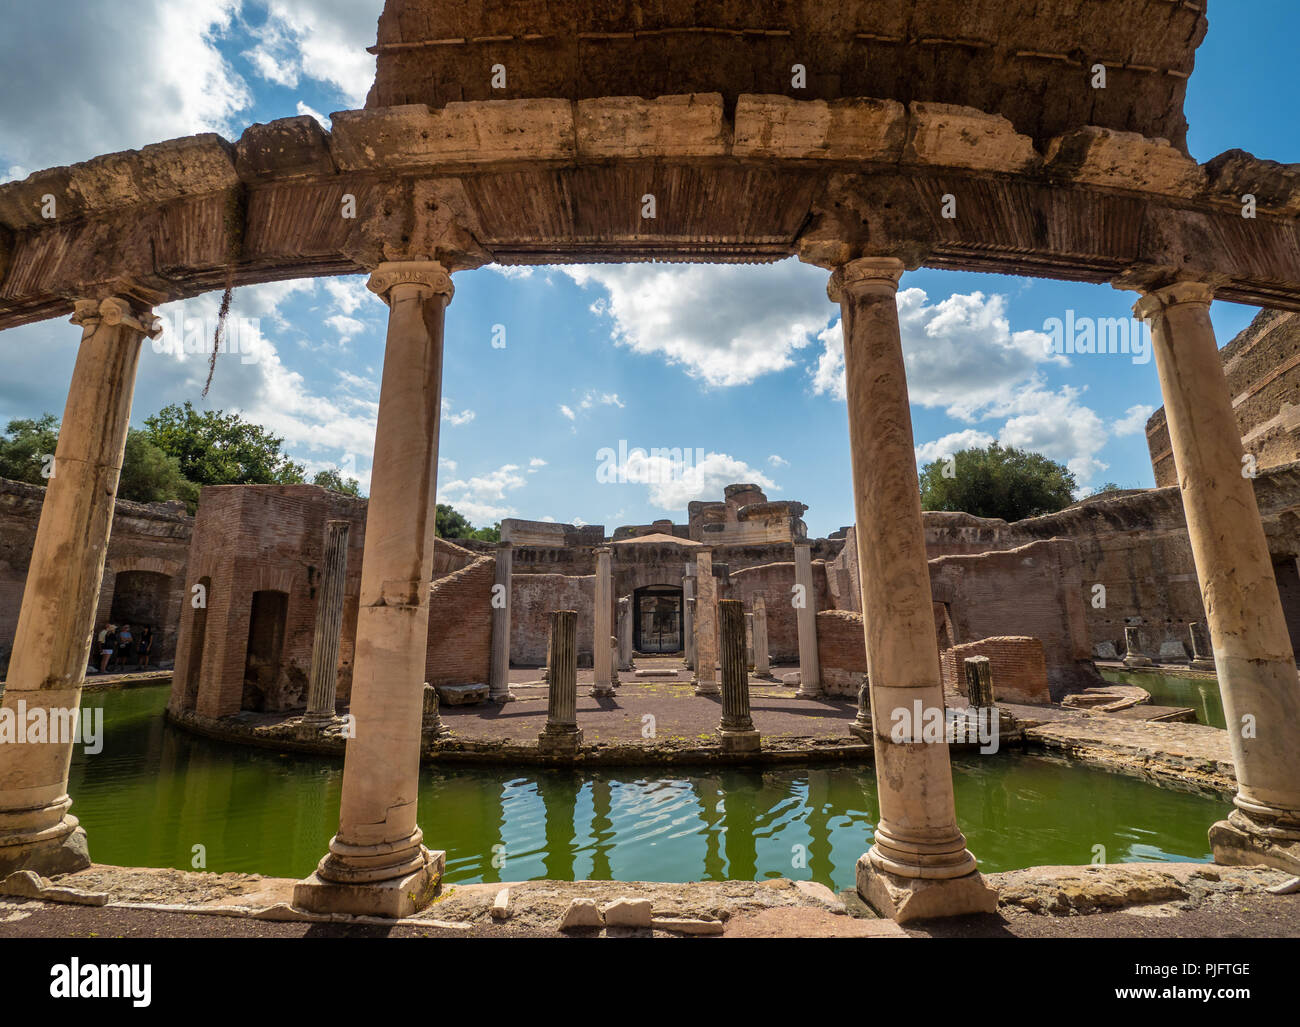 Tivoli, Italia - il famoso parco archeologico di Tivoli, in provincia di Roma, con le rovine di una città dell'impero romano chiamato Villa Adriana Foto Stock